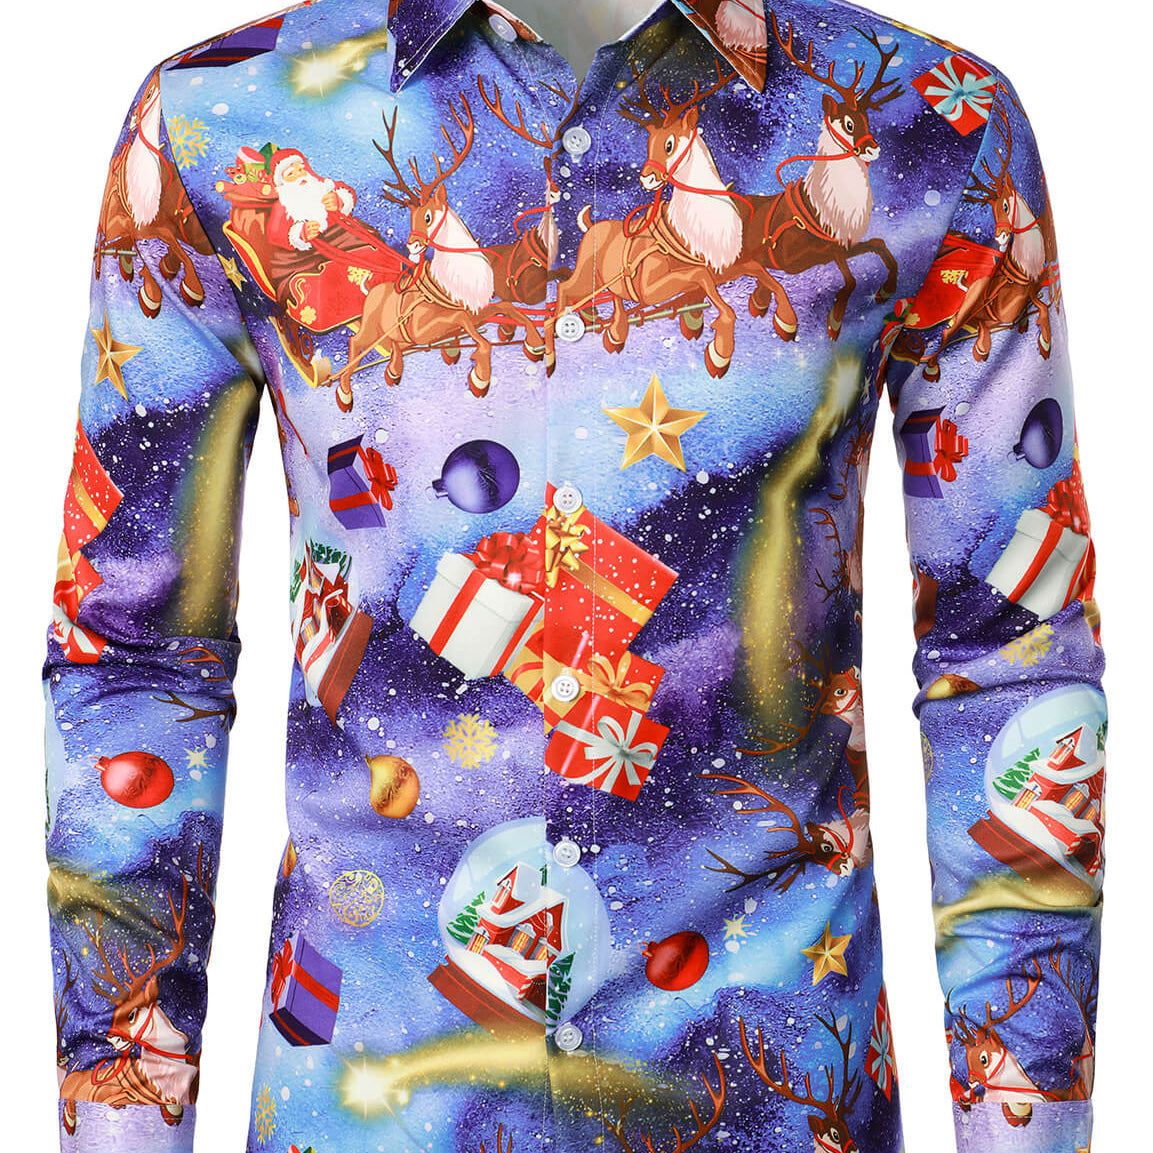 Camisa de manga larga con botones para hombre, diseño navideño de Papá Noel, reno, alce, fiesta navideña